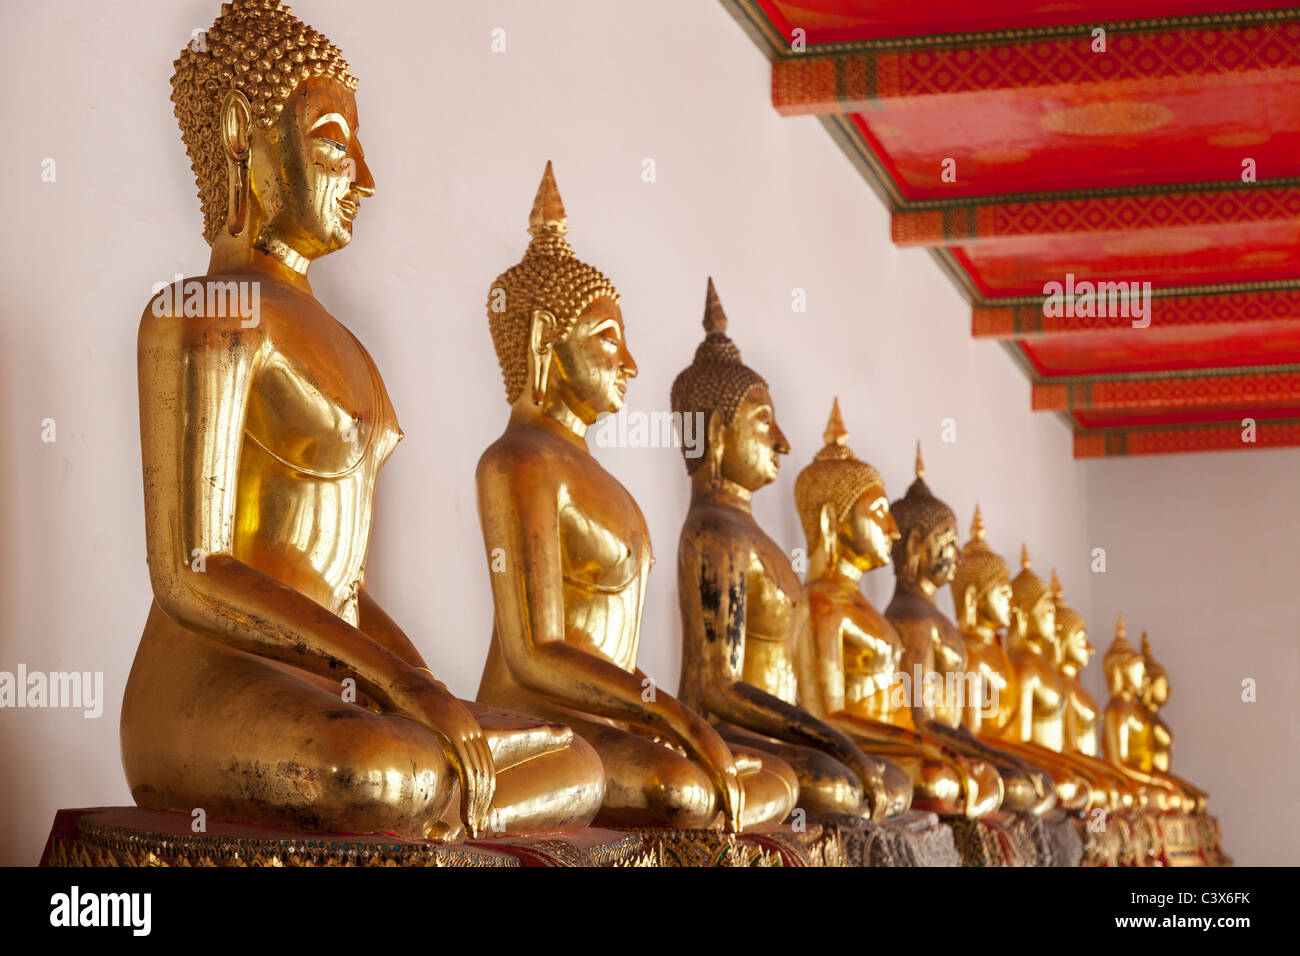 Temple de Wat Pho, Bangkok - rangée de bouddhas assis 6 Banque D'Images